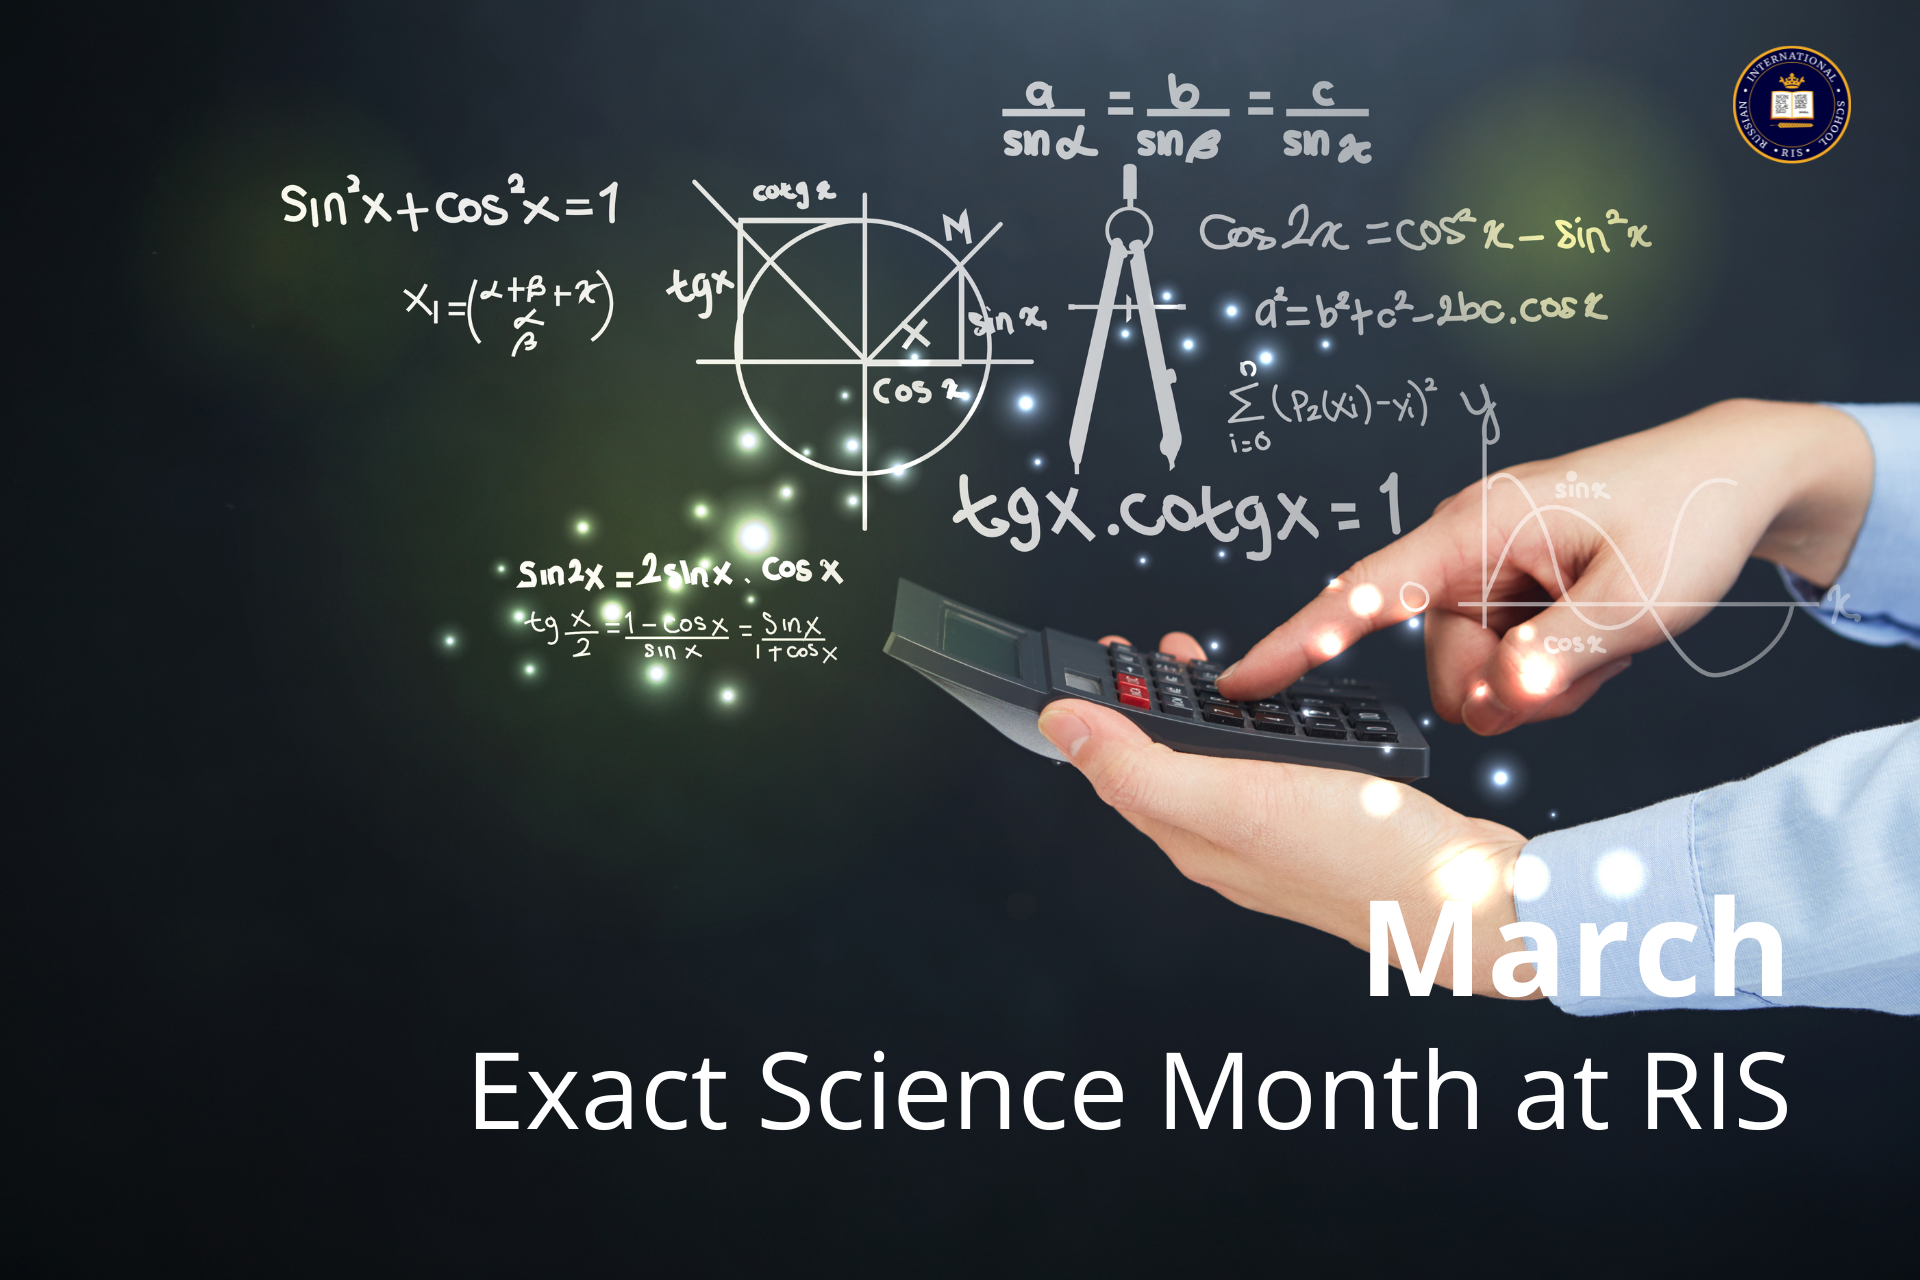 Март: обзор месяца точных наук в RIS